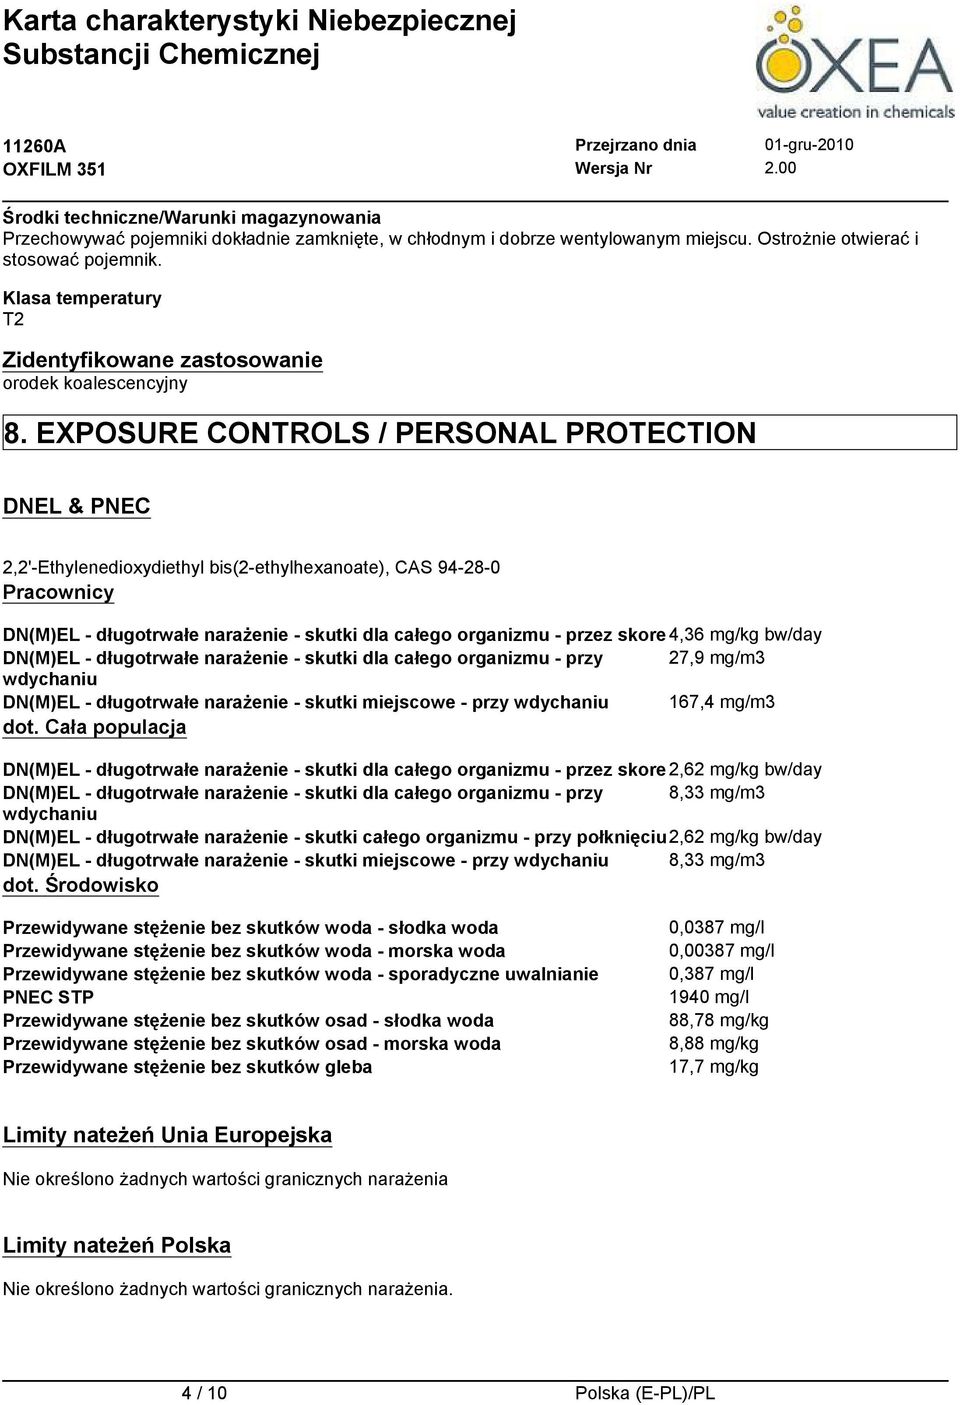 EXPOSURE CONTROLS / PERSONAL PROTECTION DNEL & PNEC 2,2'-Ethylenedioxydiethyl bis(2-ethylhexanoate), CAS 94-28-0 Pracownicy DN(M)EL - długotrwałe narażenie - skutki dla całego organizmu - przez skore